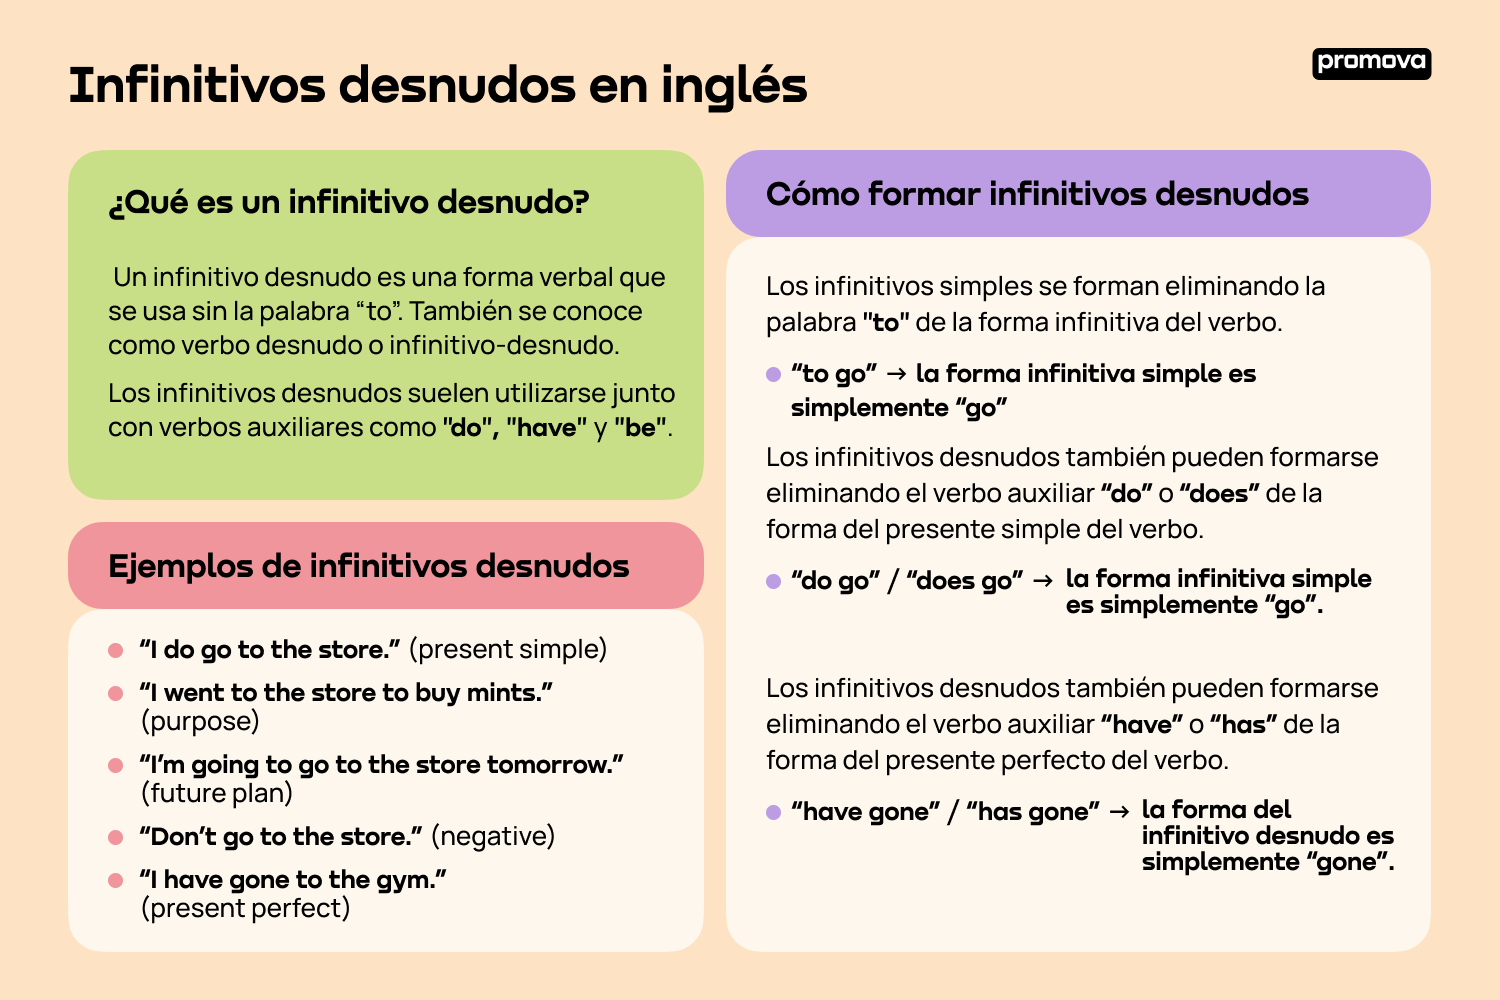 Explorando los infinitivos desnudos en inglés: Ejemplos prácticos